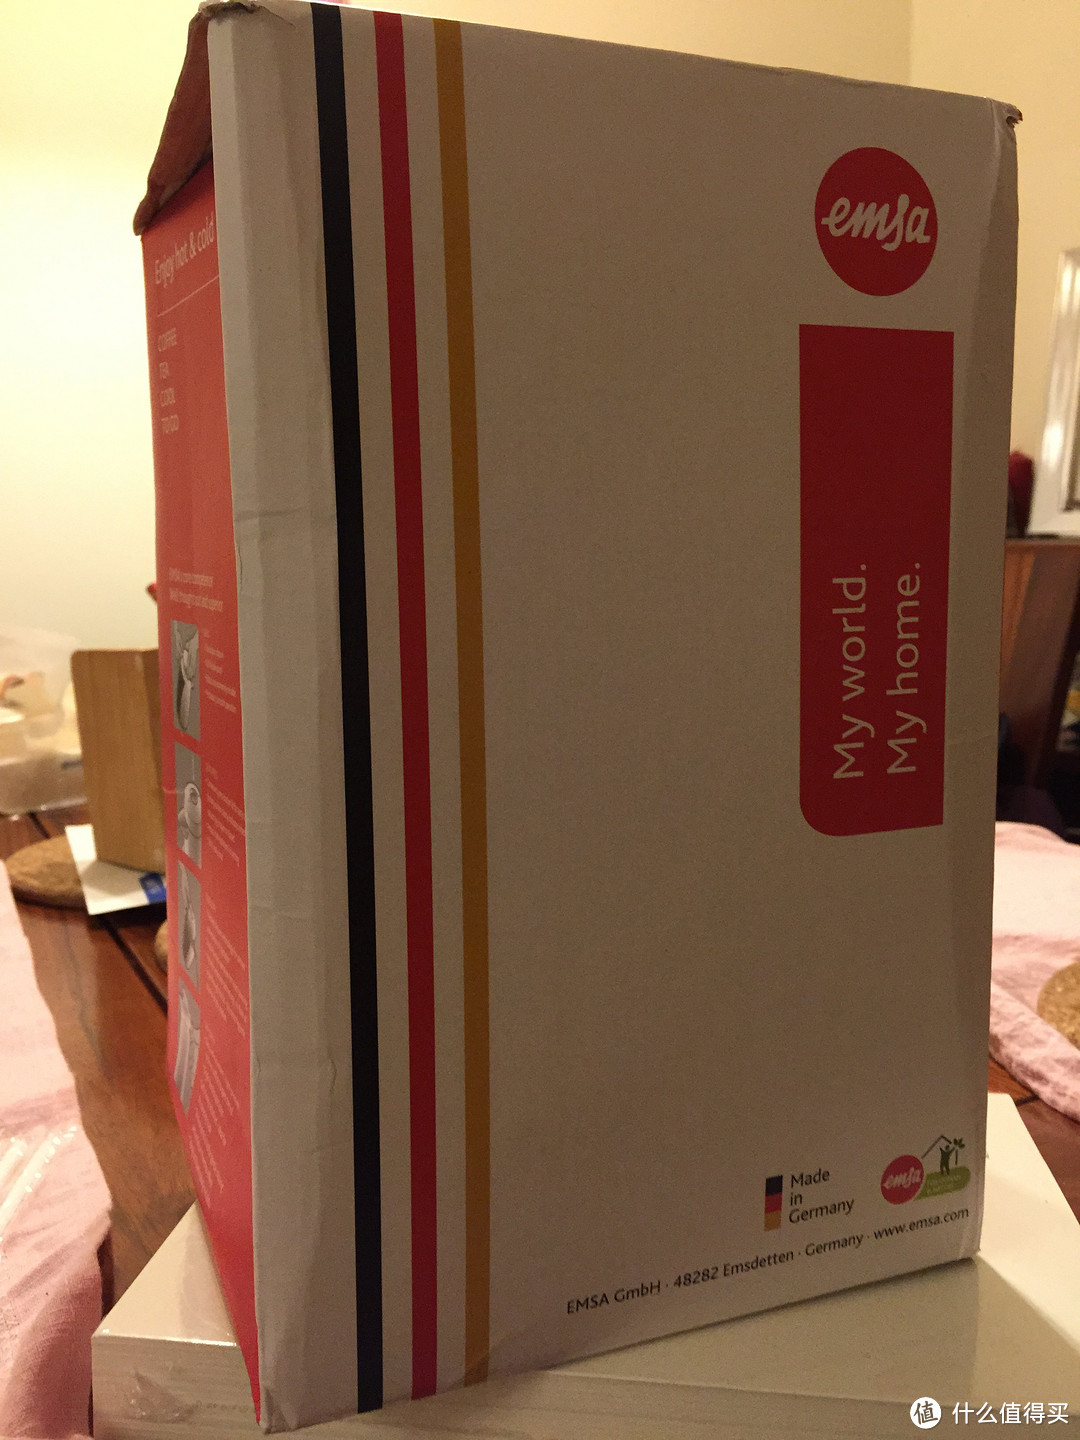 包装为纸盒，有点被挤压，还好里面也有一层空气泡包装。